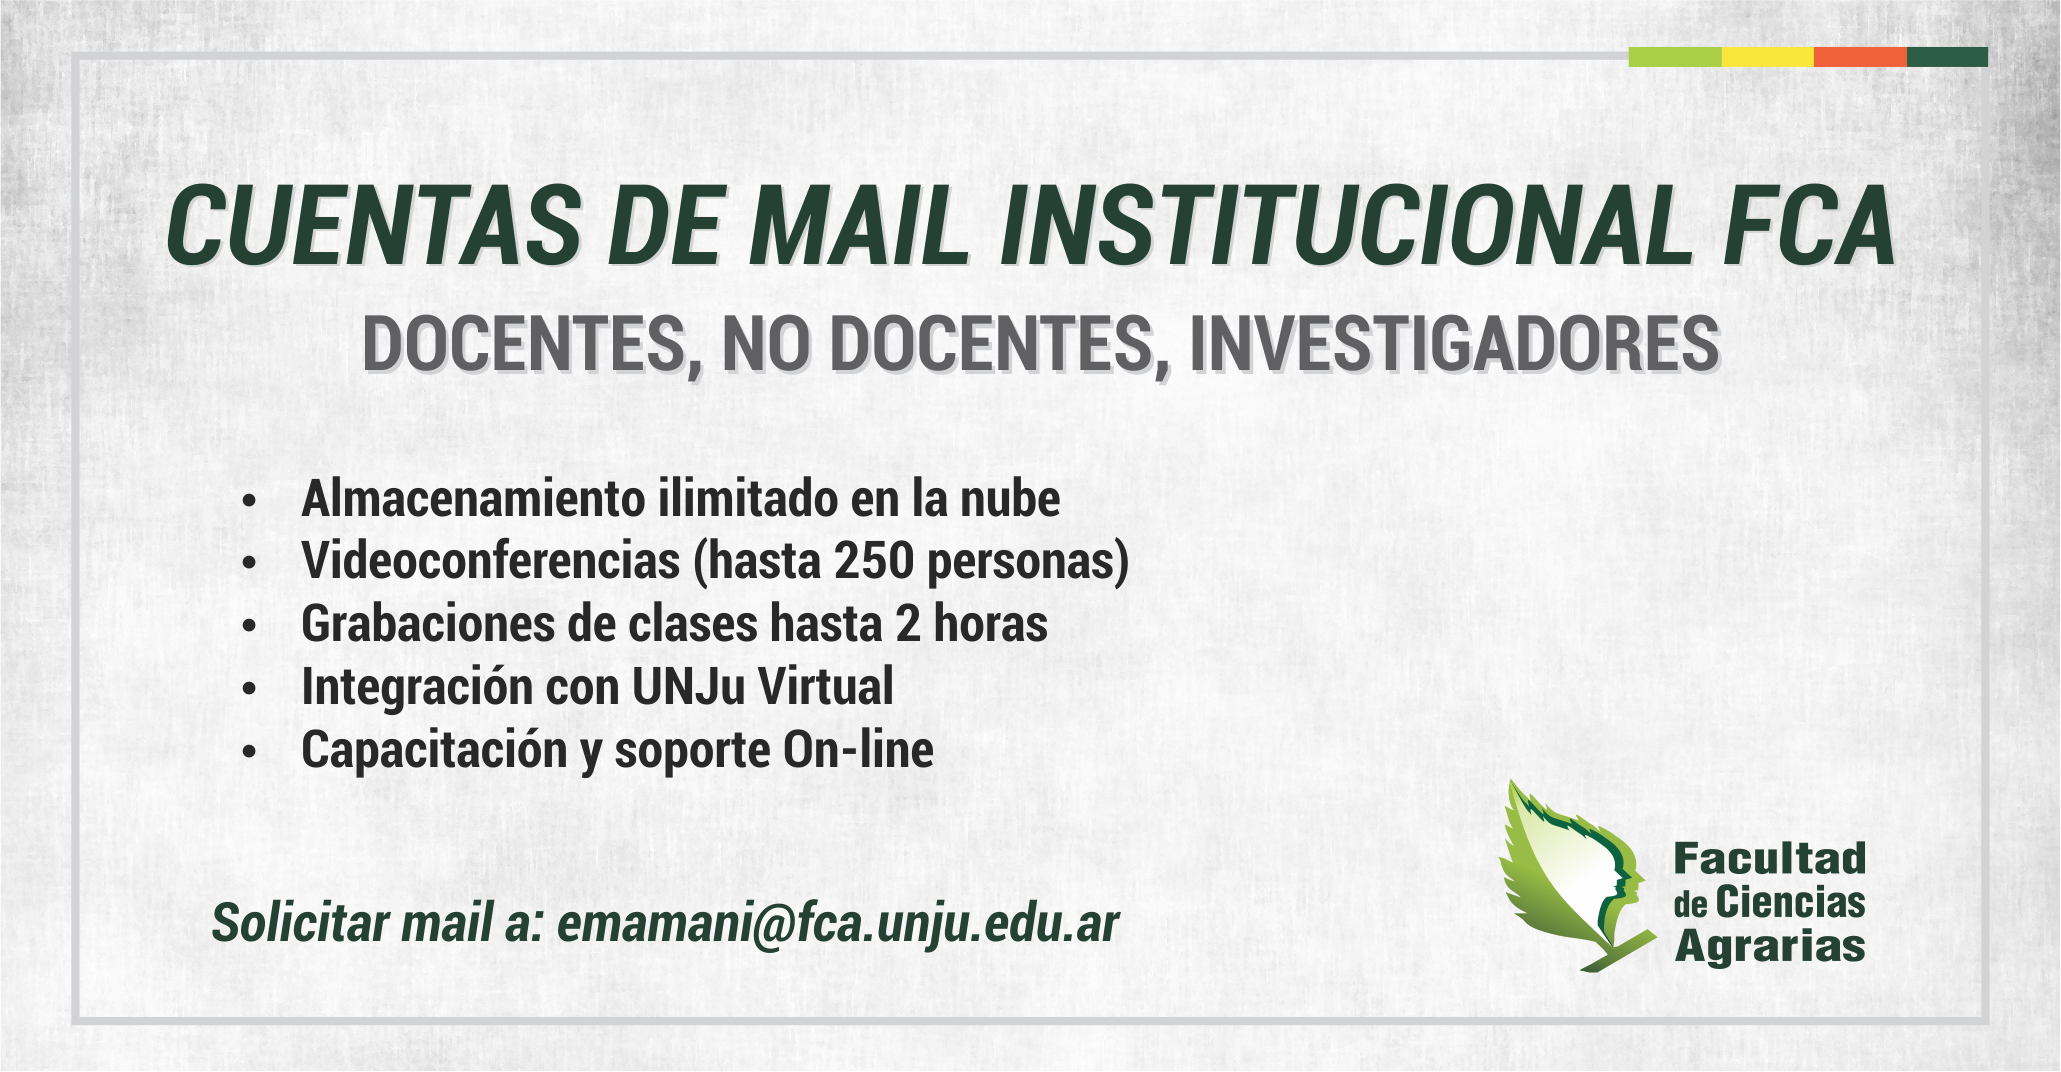 Creación de correos institucionales para Docentes, no docentes e investigadores de la FCA-UNJu